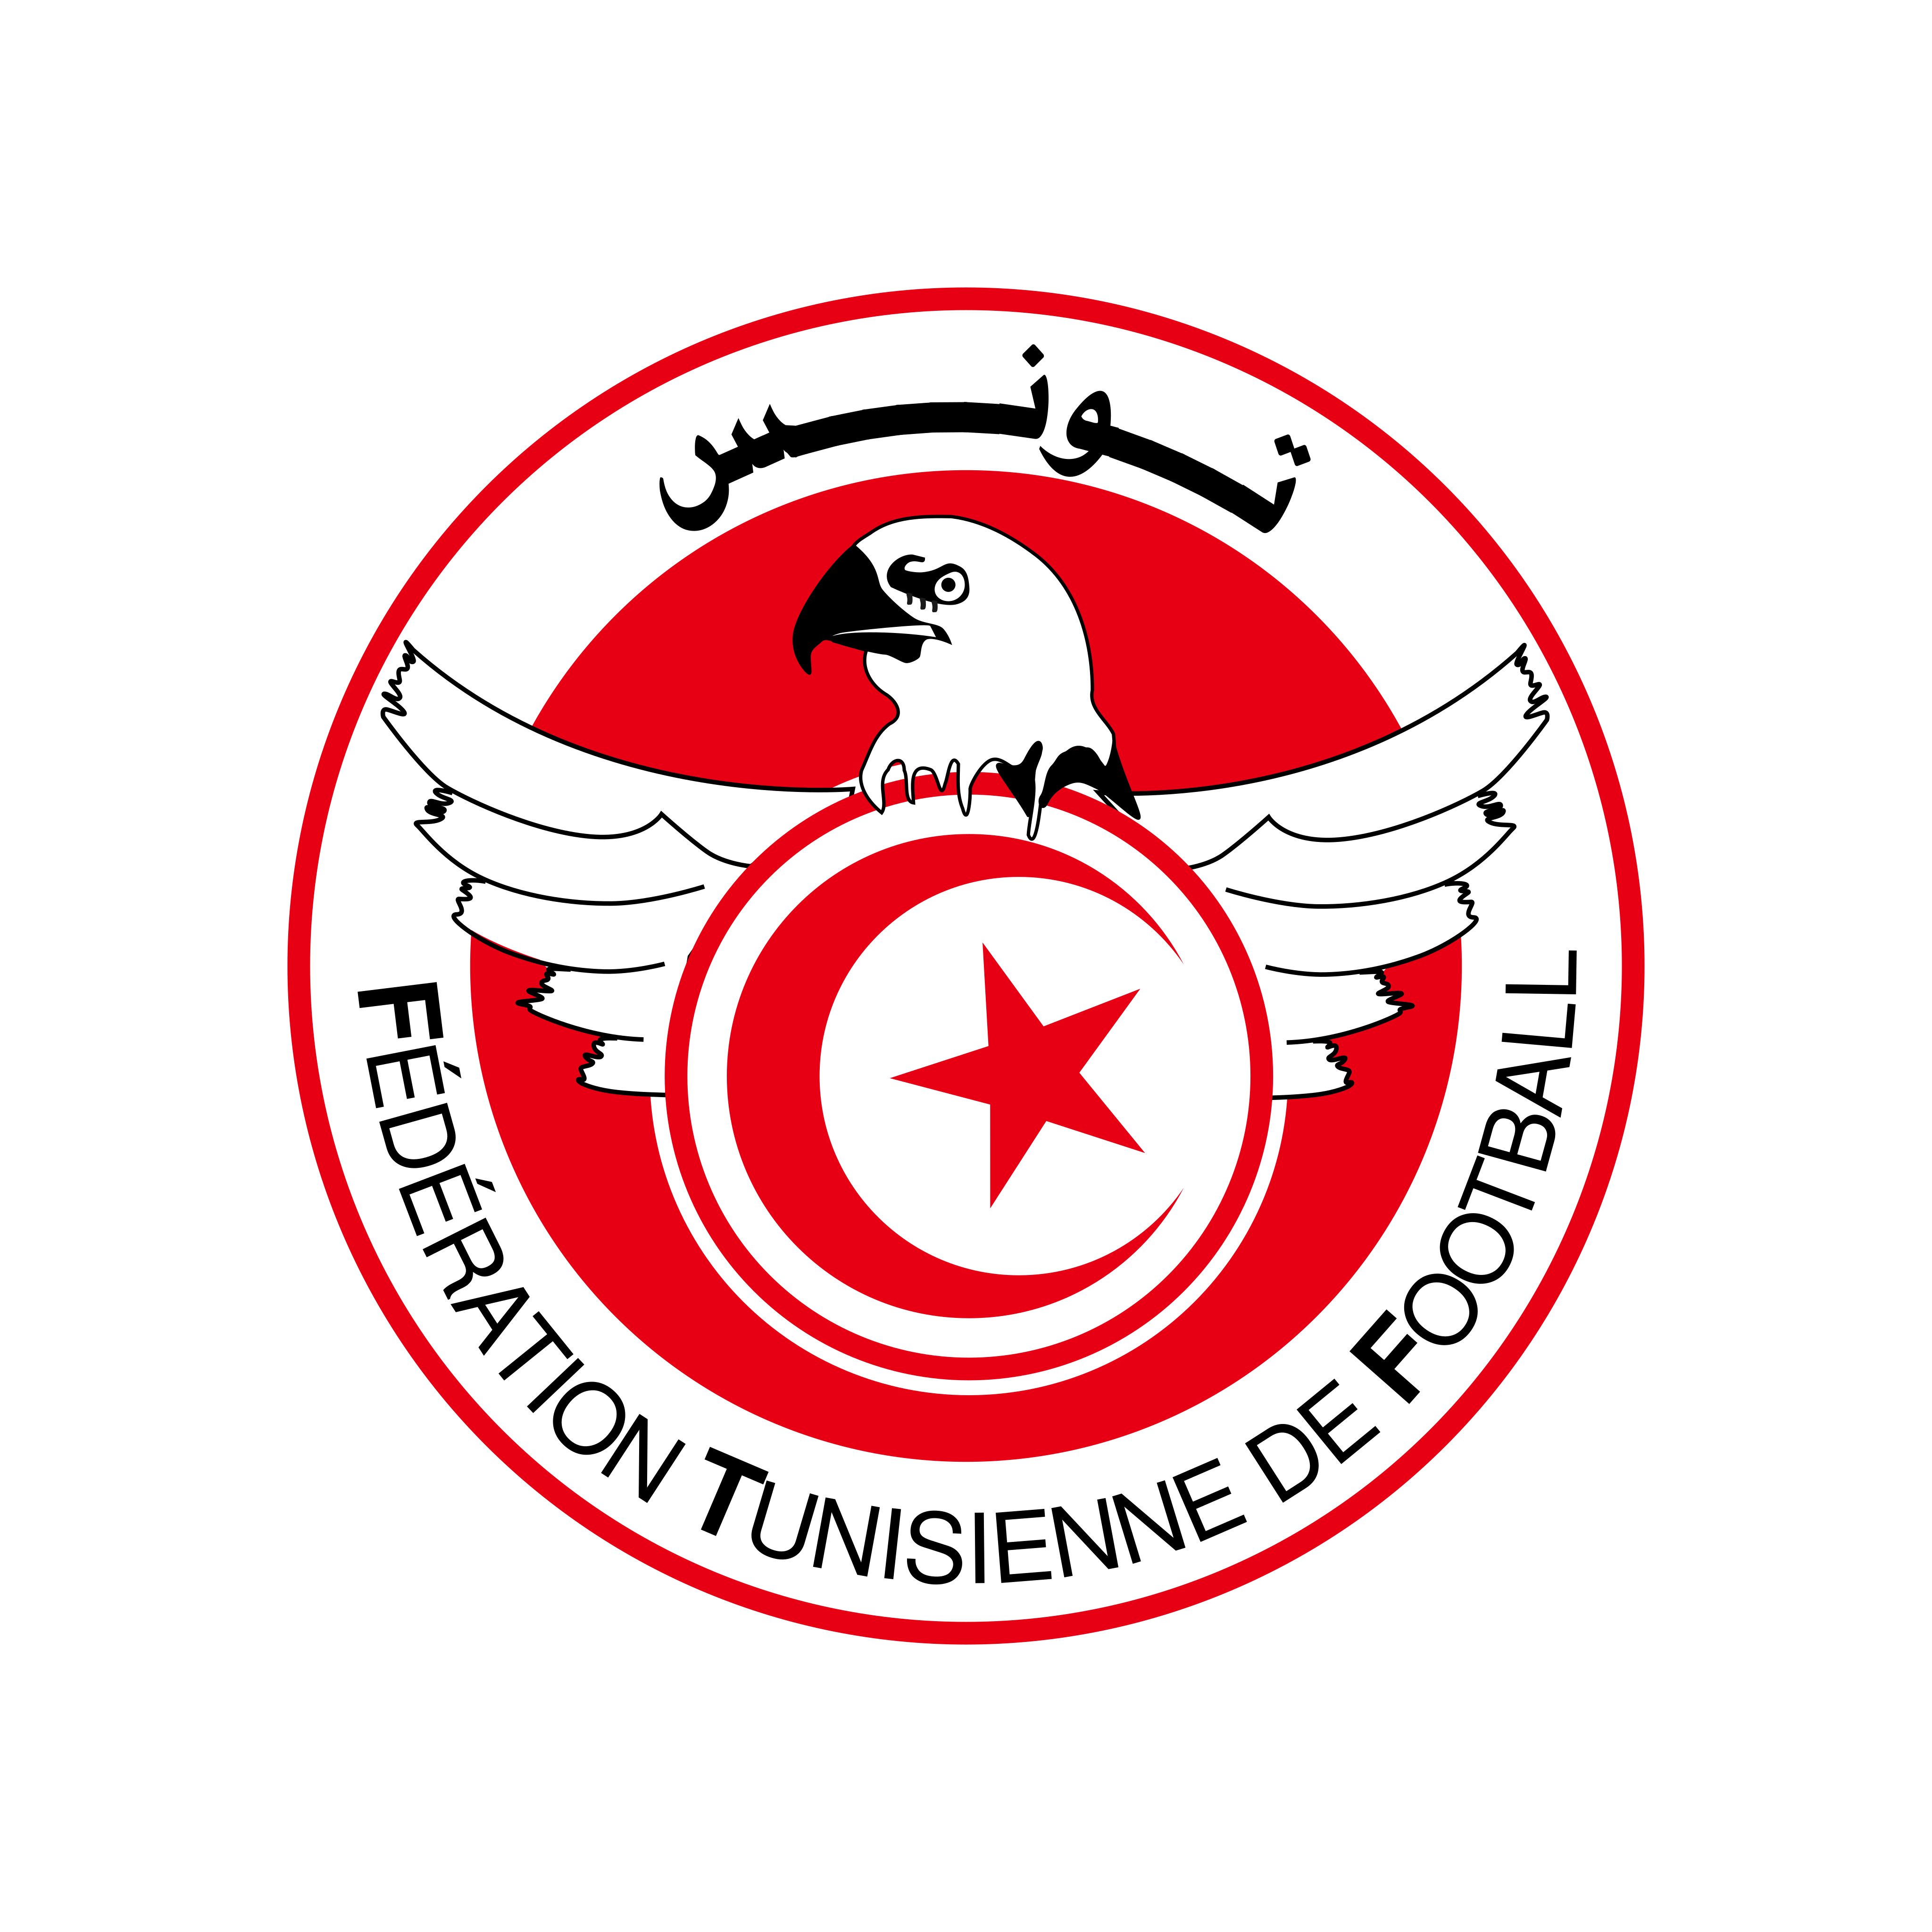 tunisia national football team logo 0 - Tunisia National Football Team